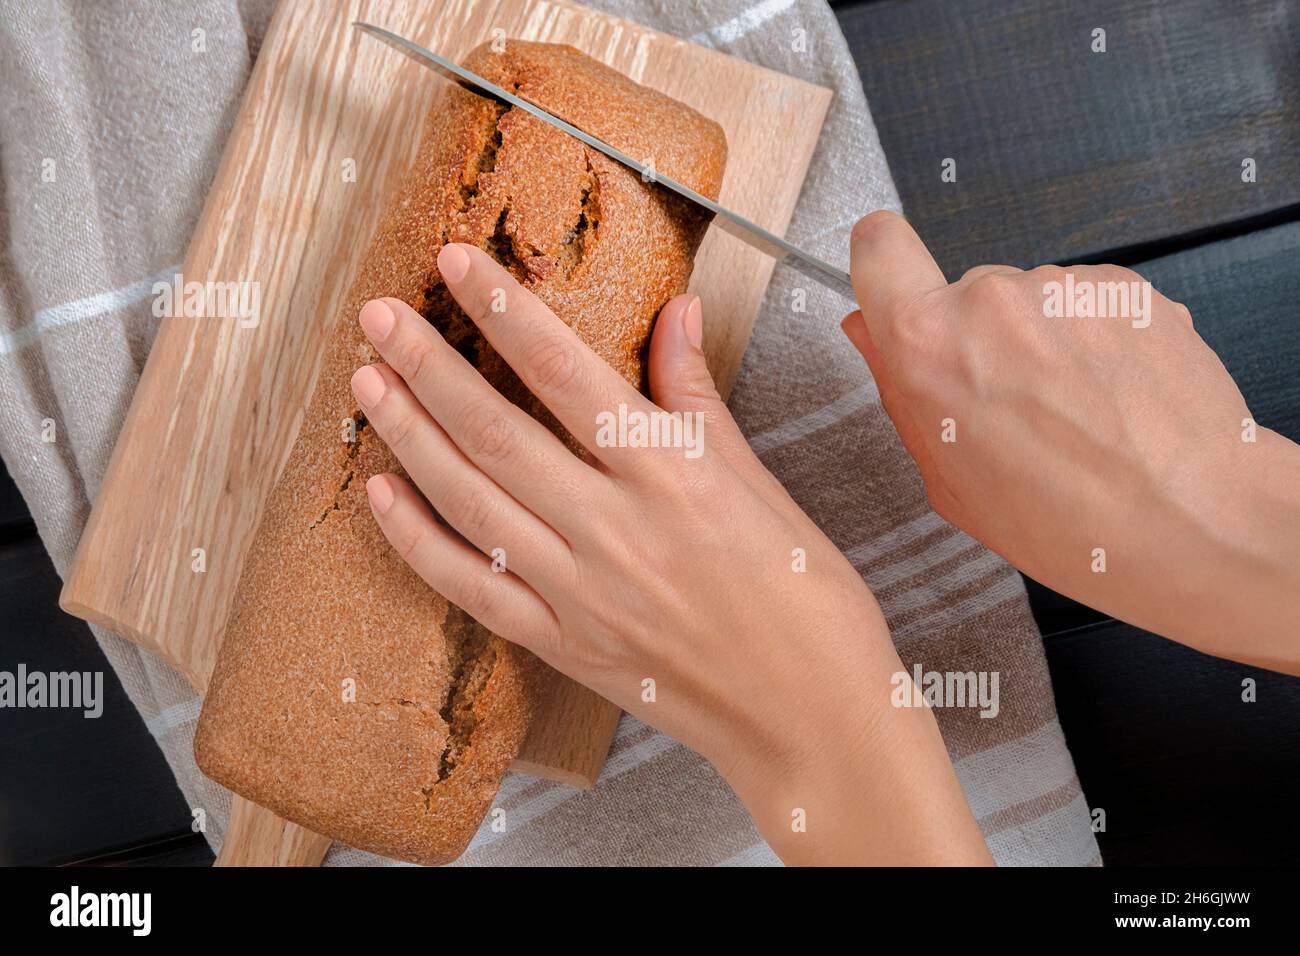 Vue de dessus des mains de femme tenant le couteau et coupant du pain de levain frais sur la planche à découper Banque D'Images